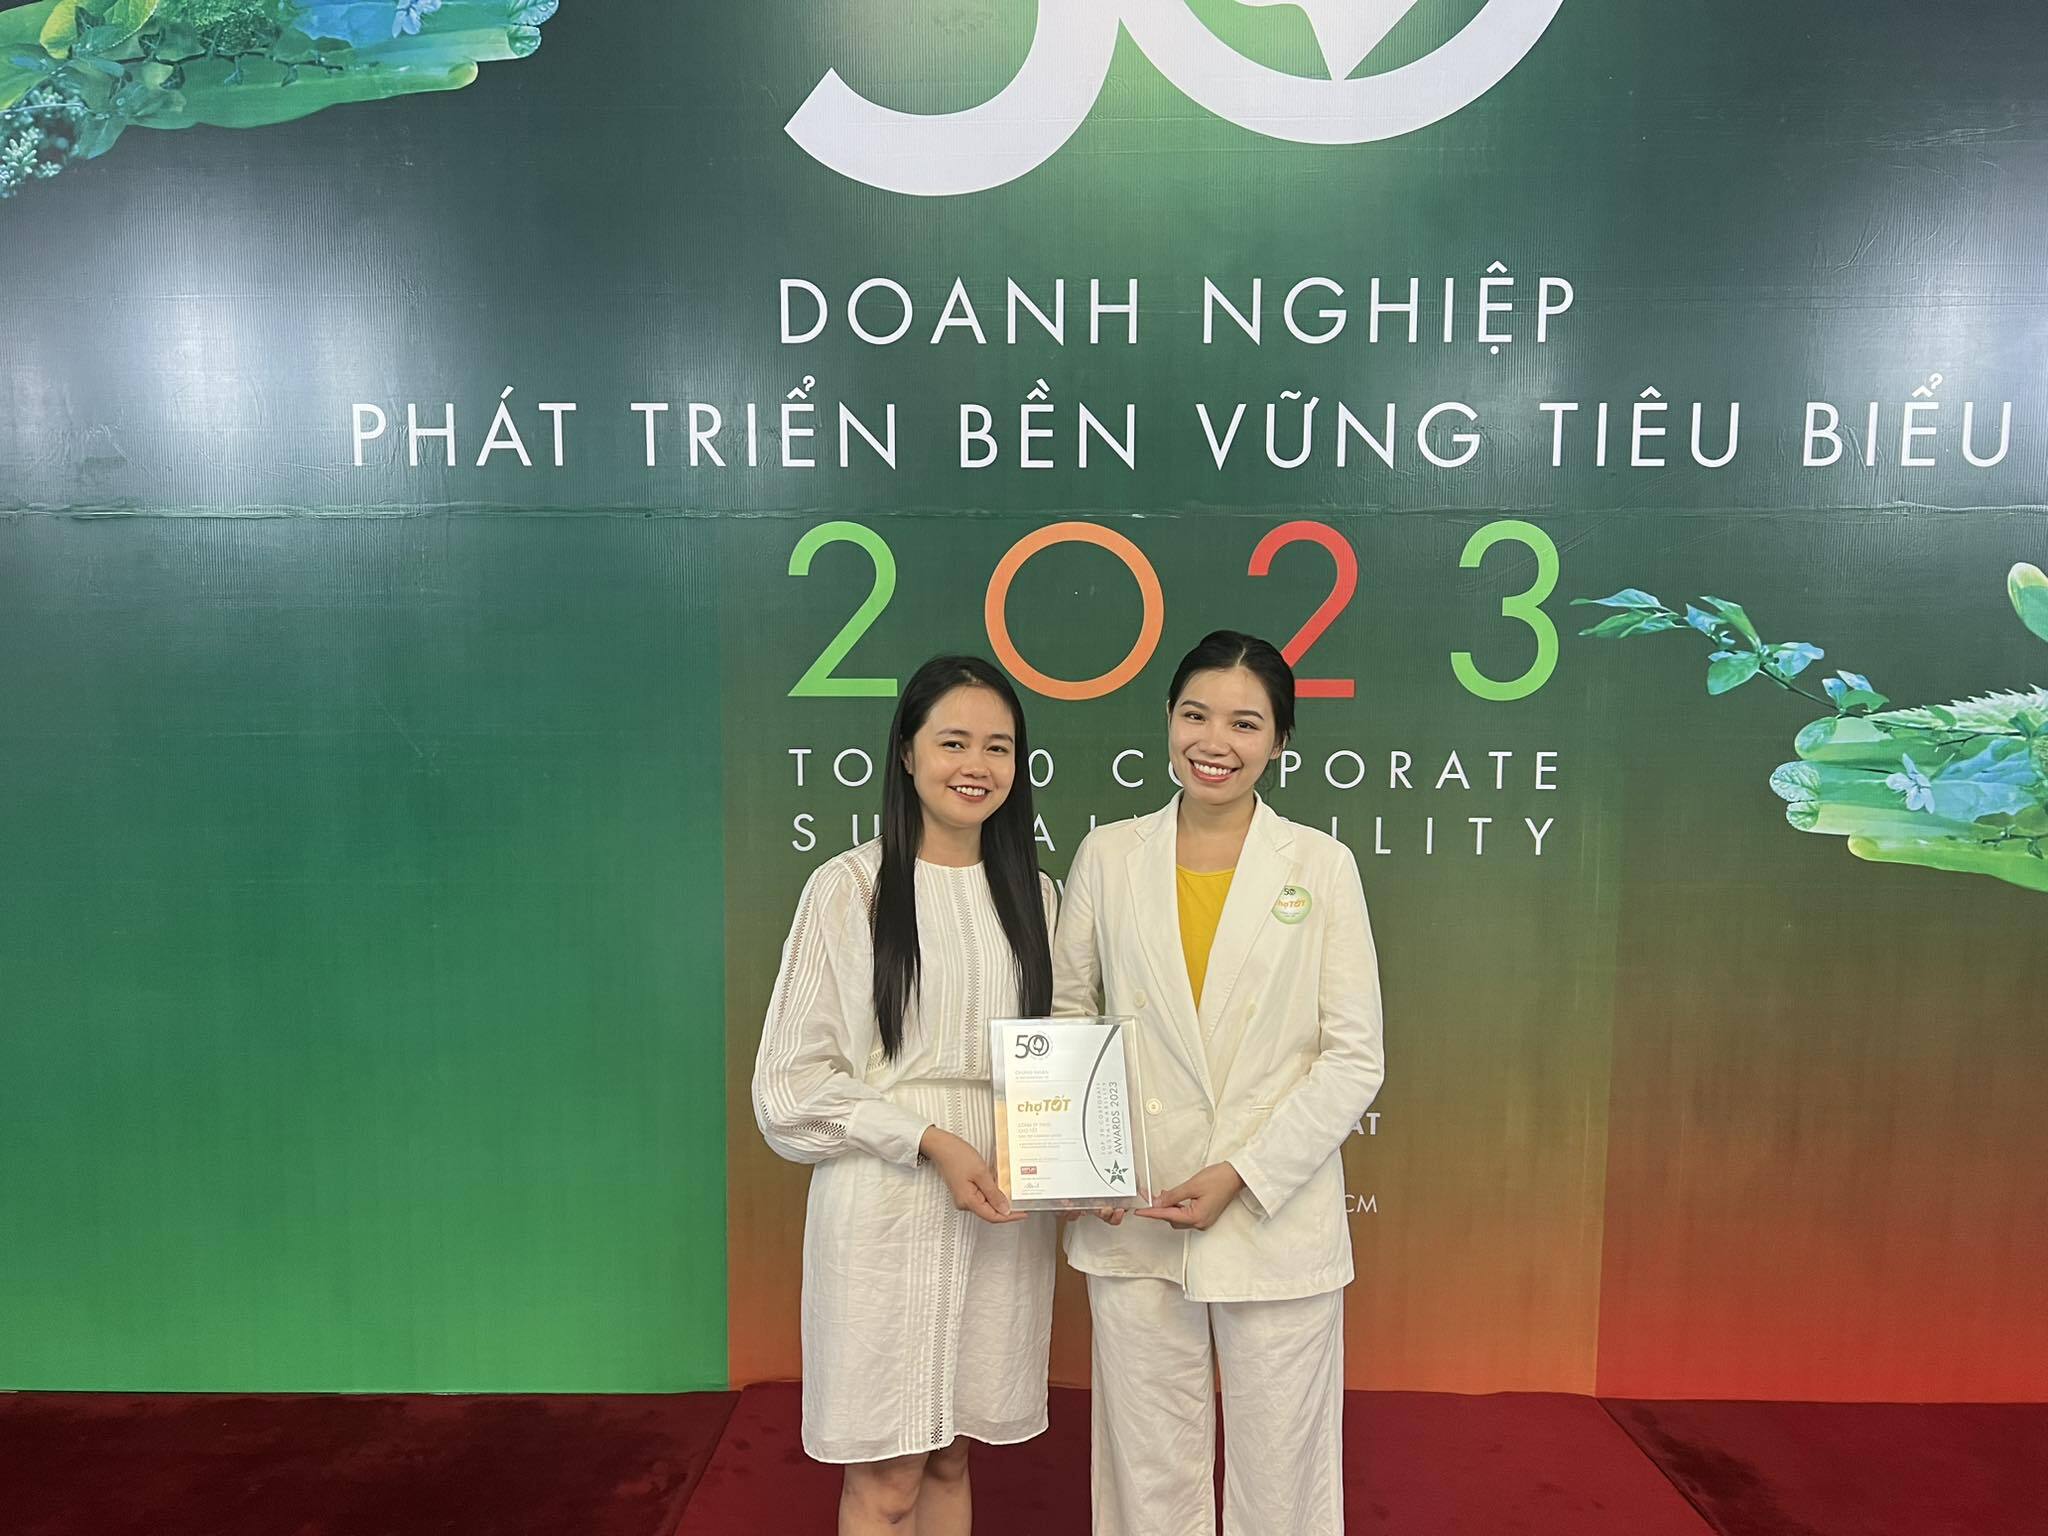 [Vietnamese Blog] Chợ Tốt vinh dự nhận giải thưởng Top 50 Doanh nghiệp Phát triển Bền vững 2023